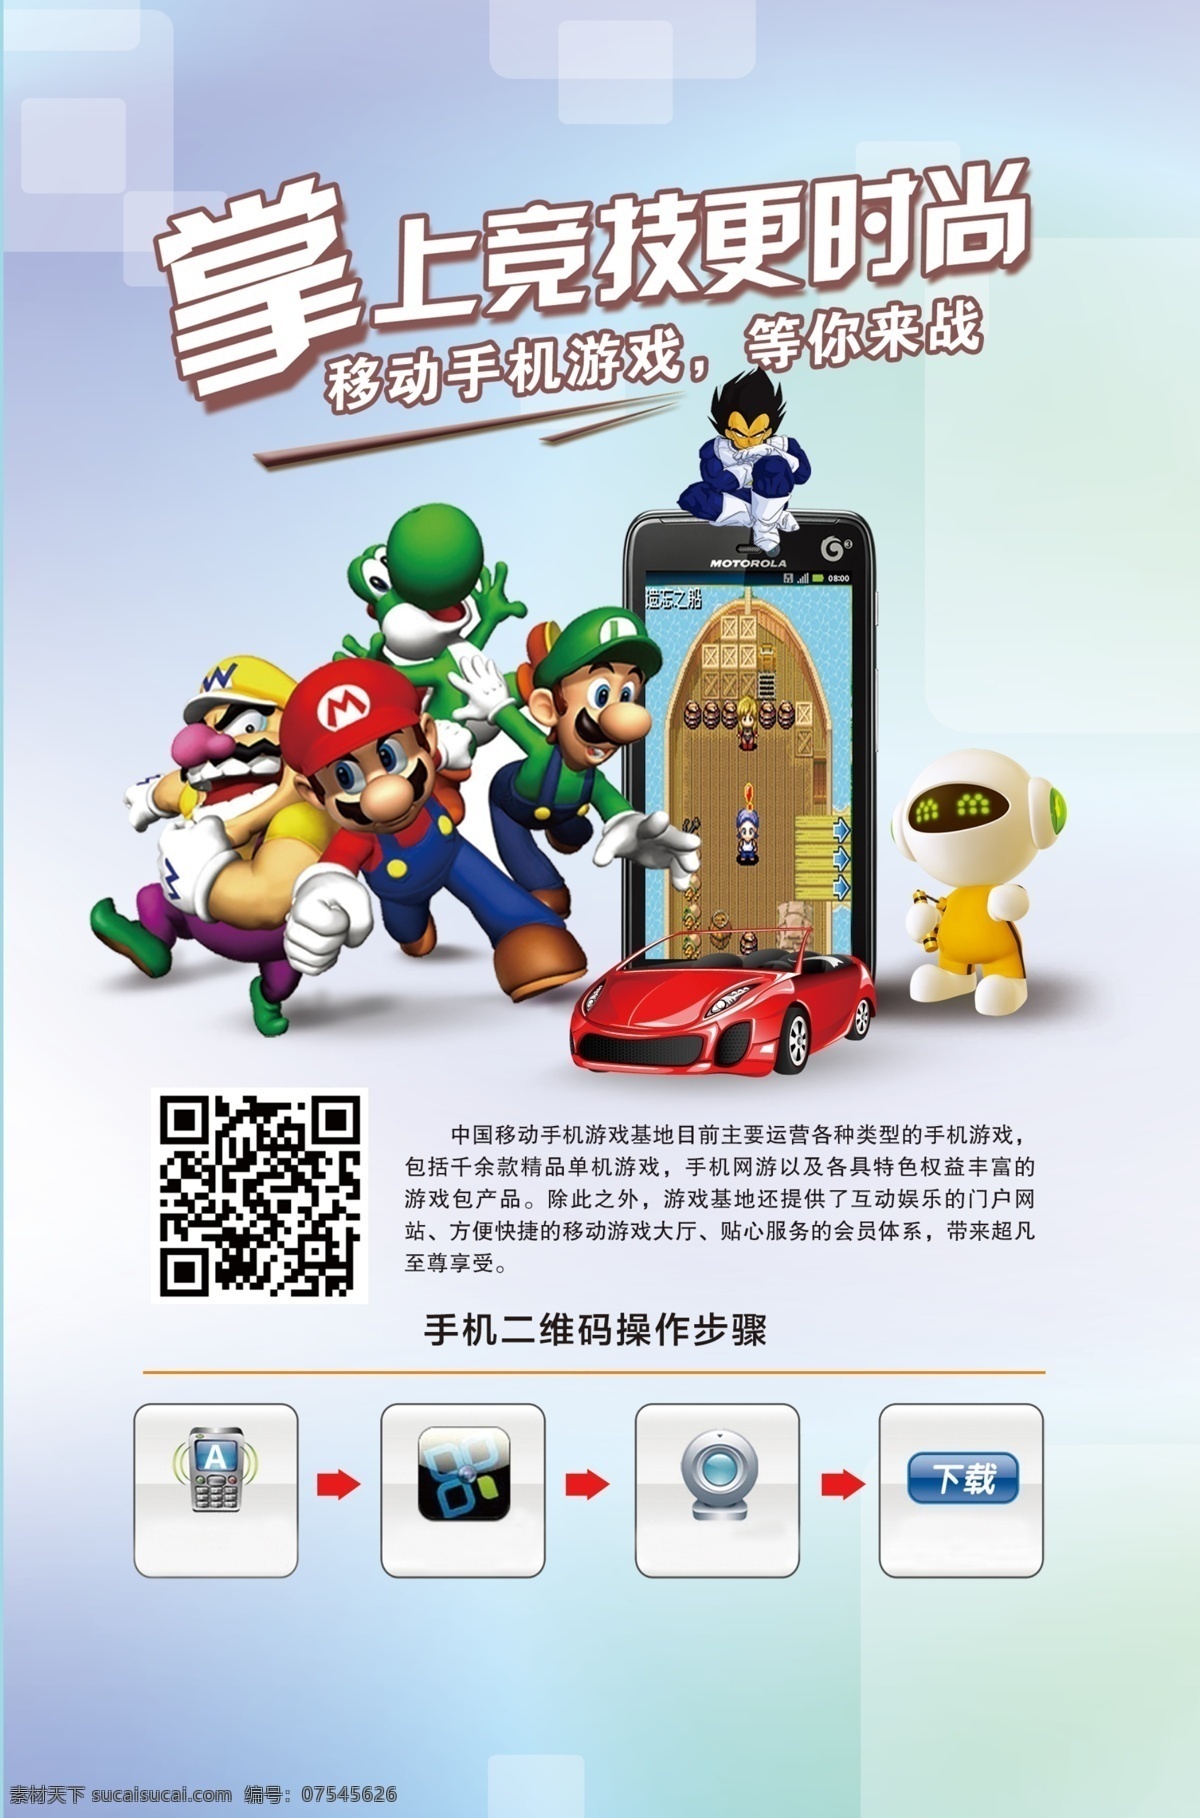 二维码 广告设计模板 汽车 手机 手机游戏 源文件 模板下载 手机游戏卡通 手机游戏人物 其他海报设计